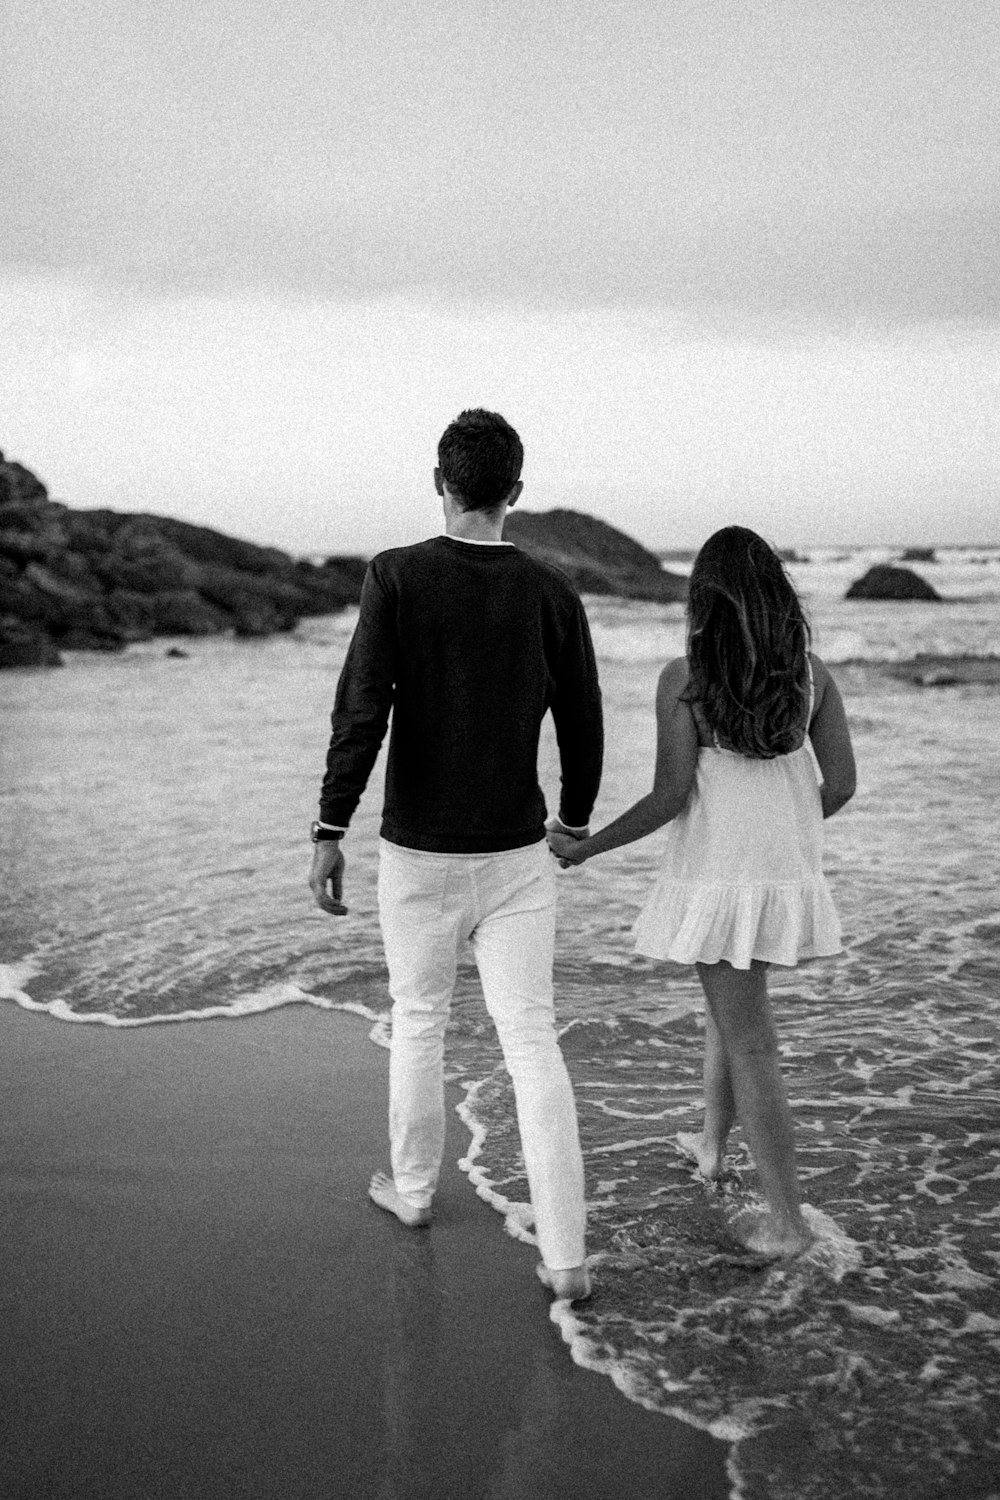 Un hombre y una mujer tomados de la mano mientras caminan por la playa